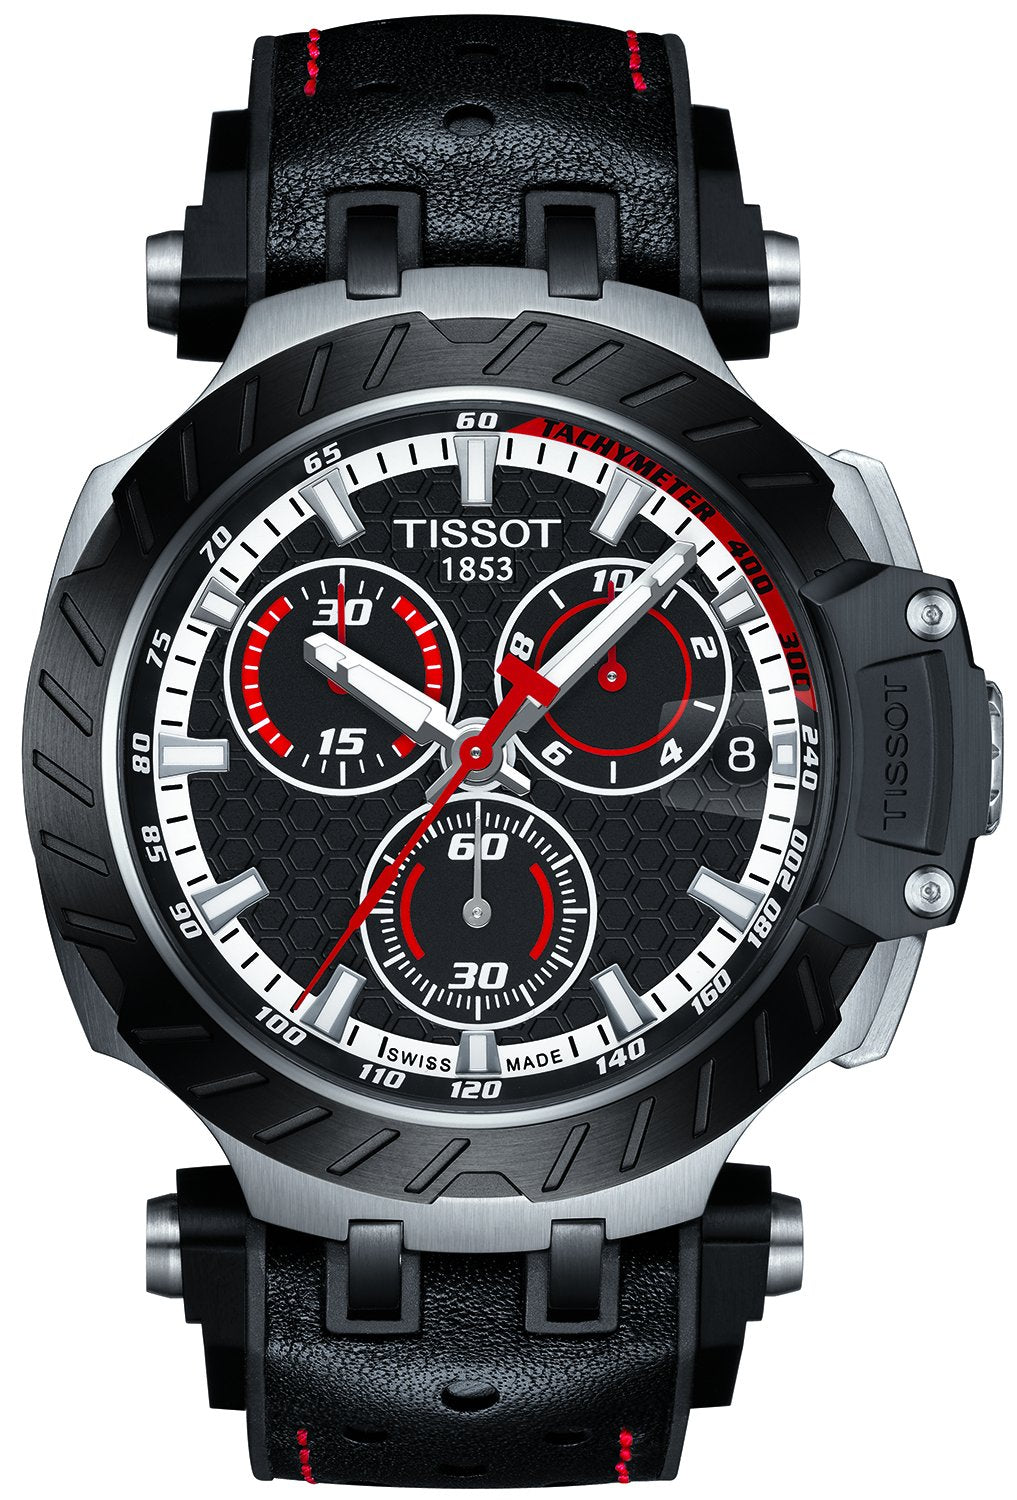 Tissot Watch T-race Motogp Quartz 2020 Limited Edition